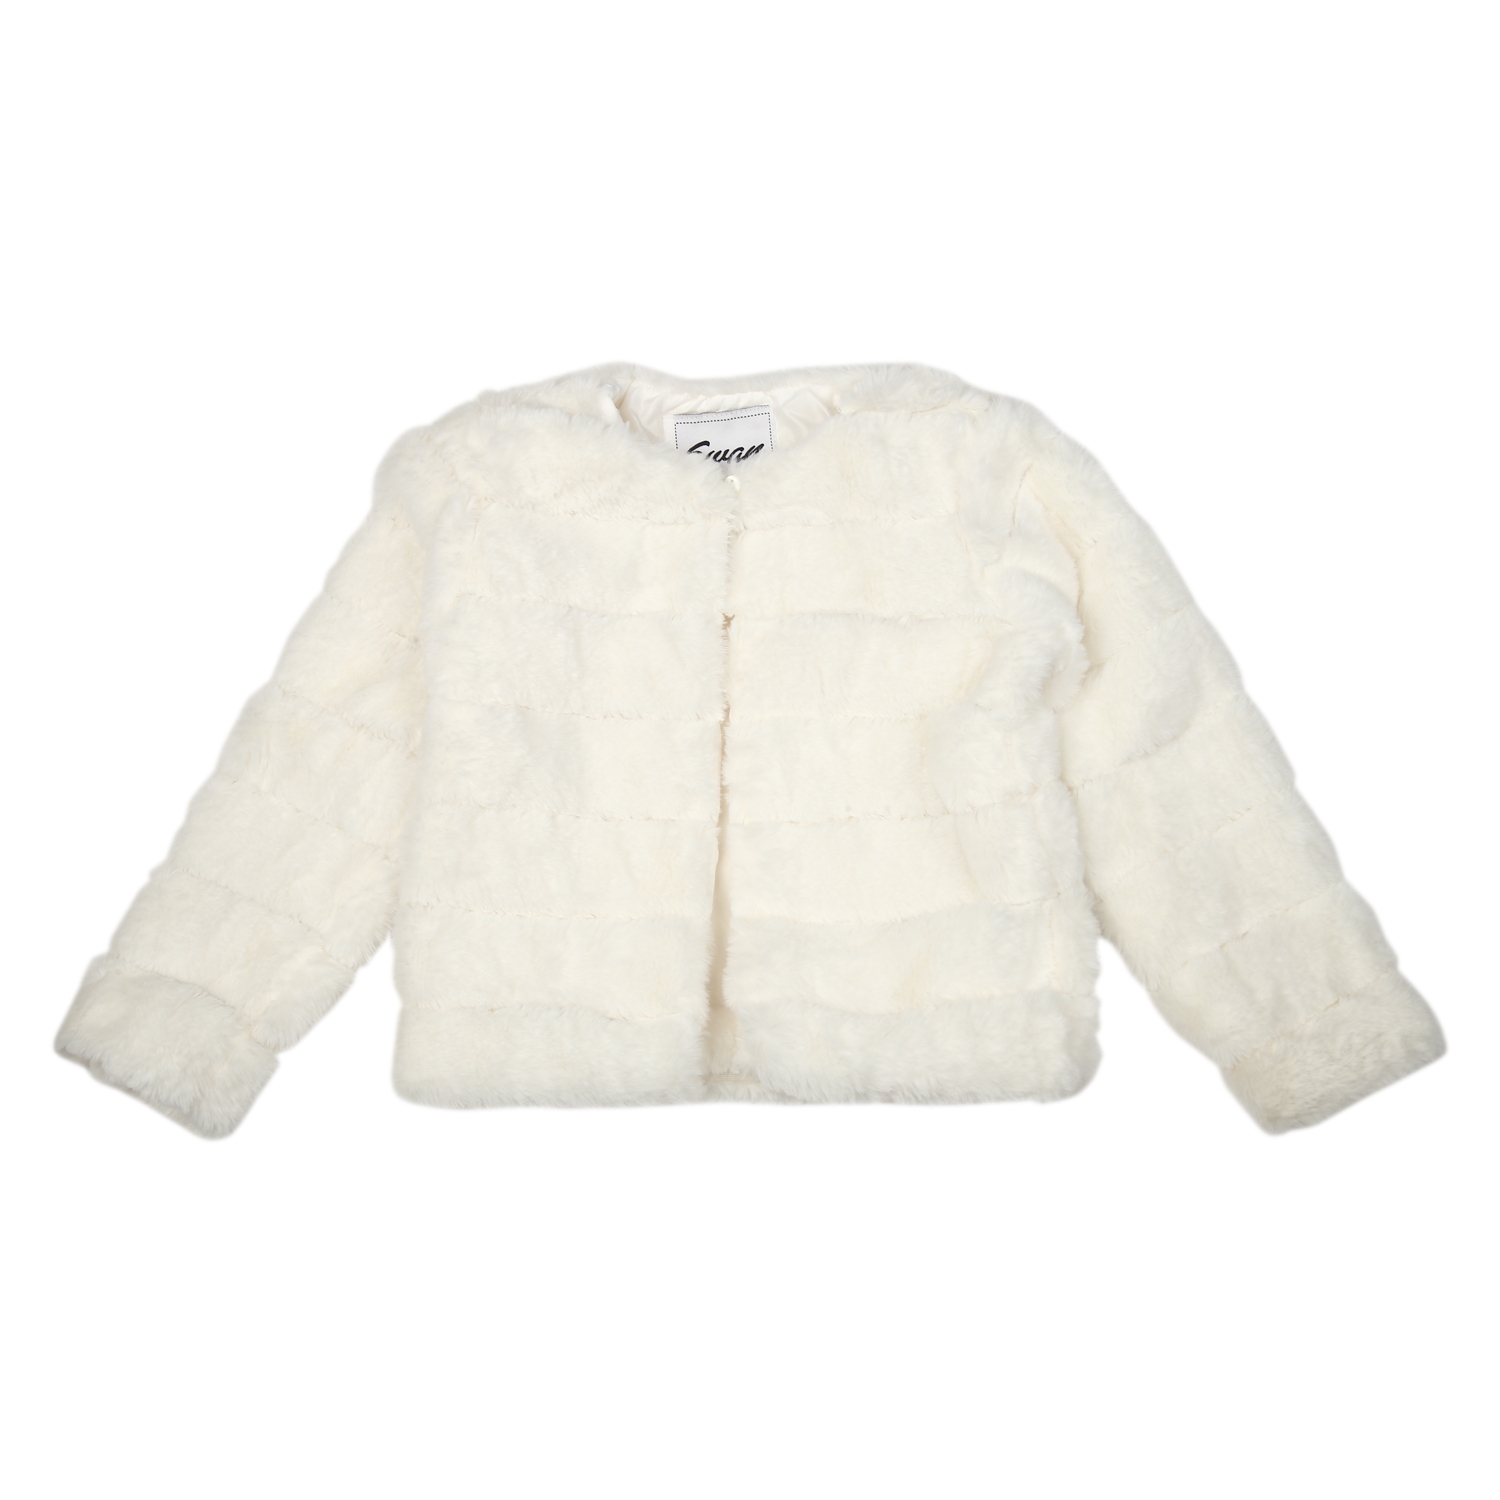 Mothercare | Girls Full Sleeves Jacket - White